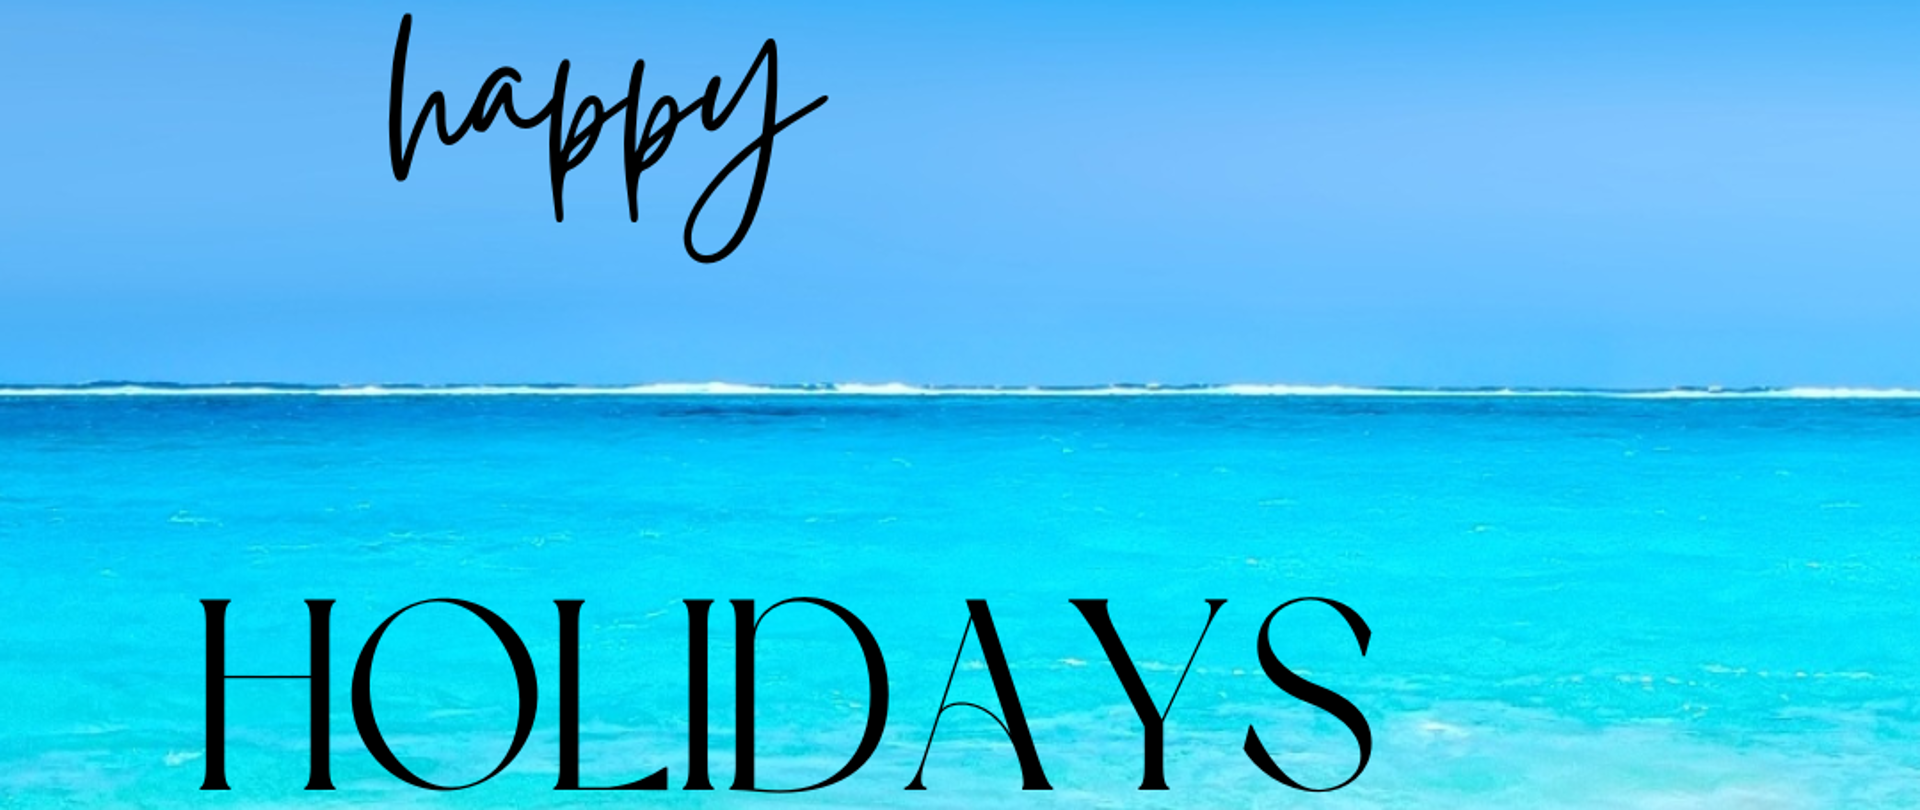 Zdjęcie przedstawiające błękitny ocean z piaszczystą plażą. W tle napis "happy holidays".